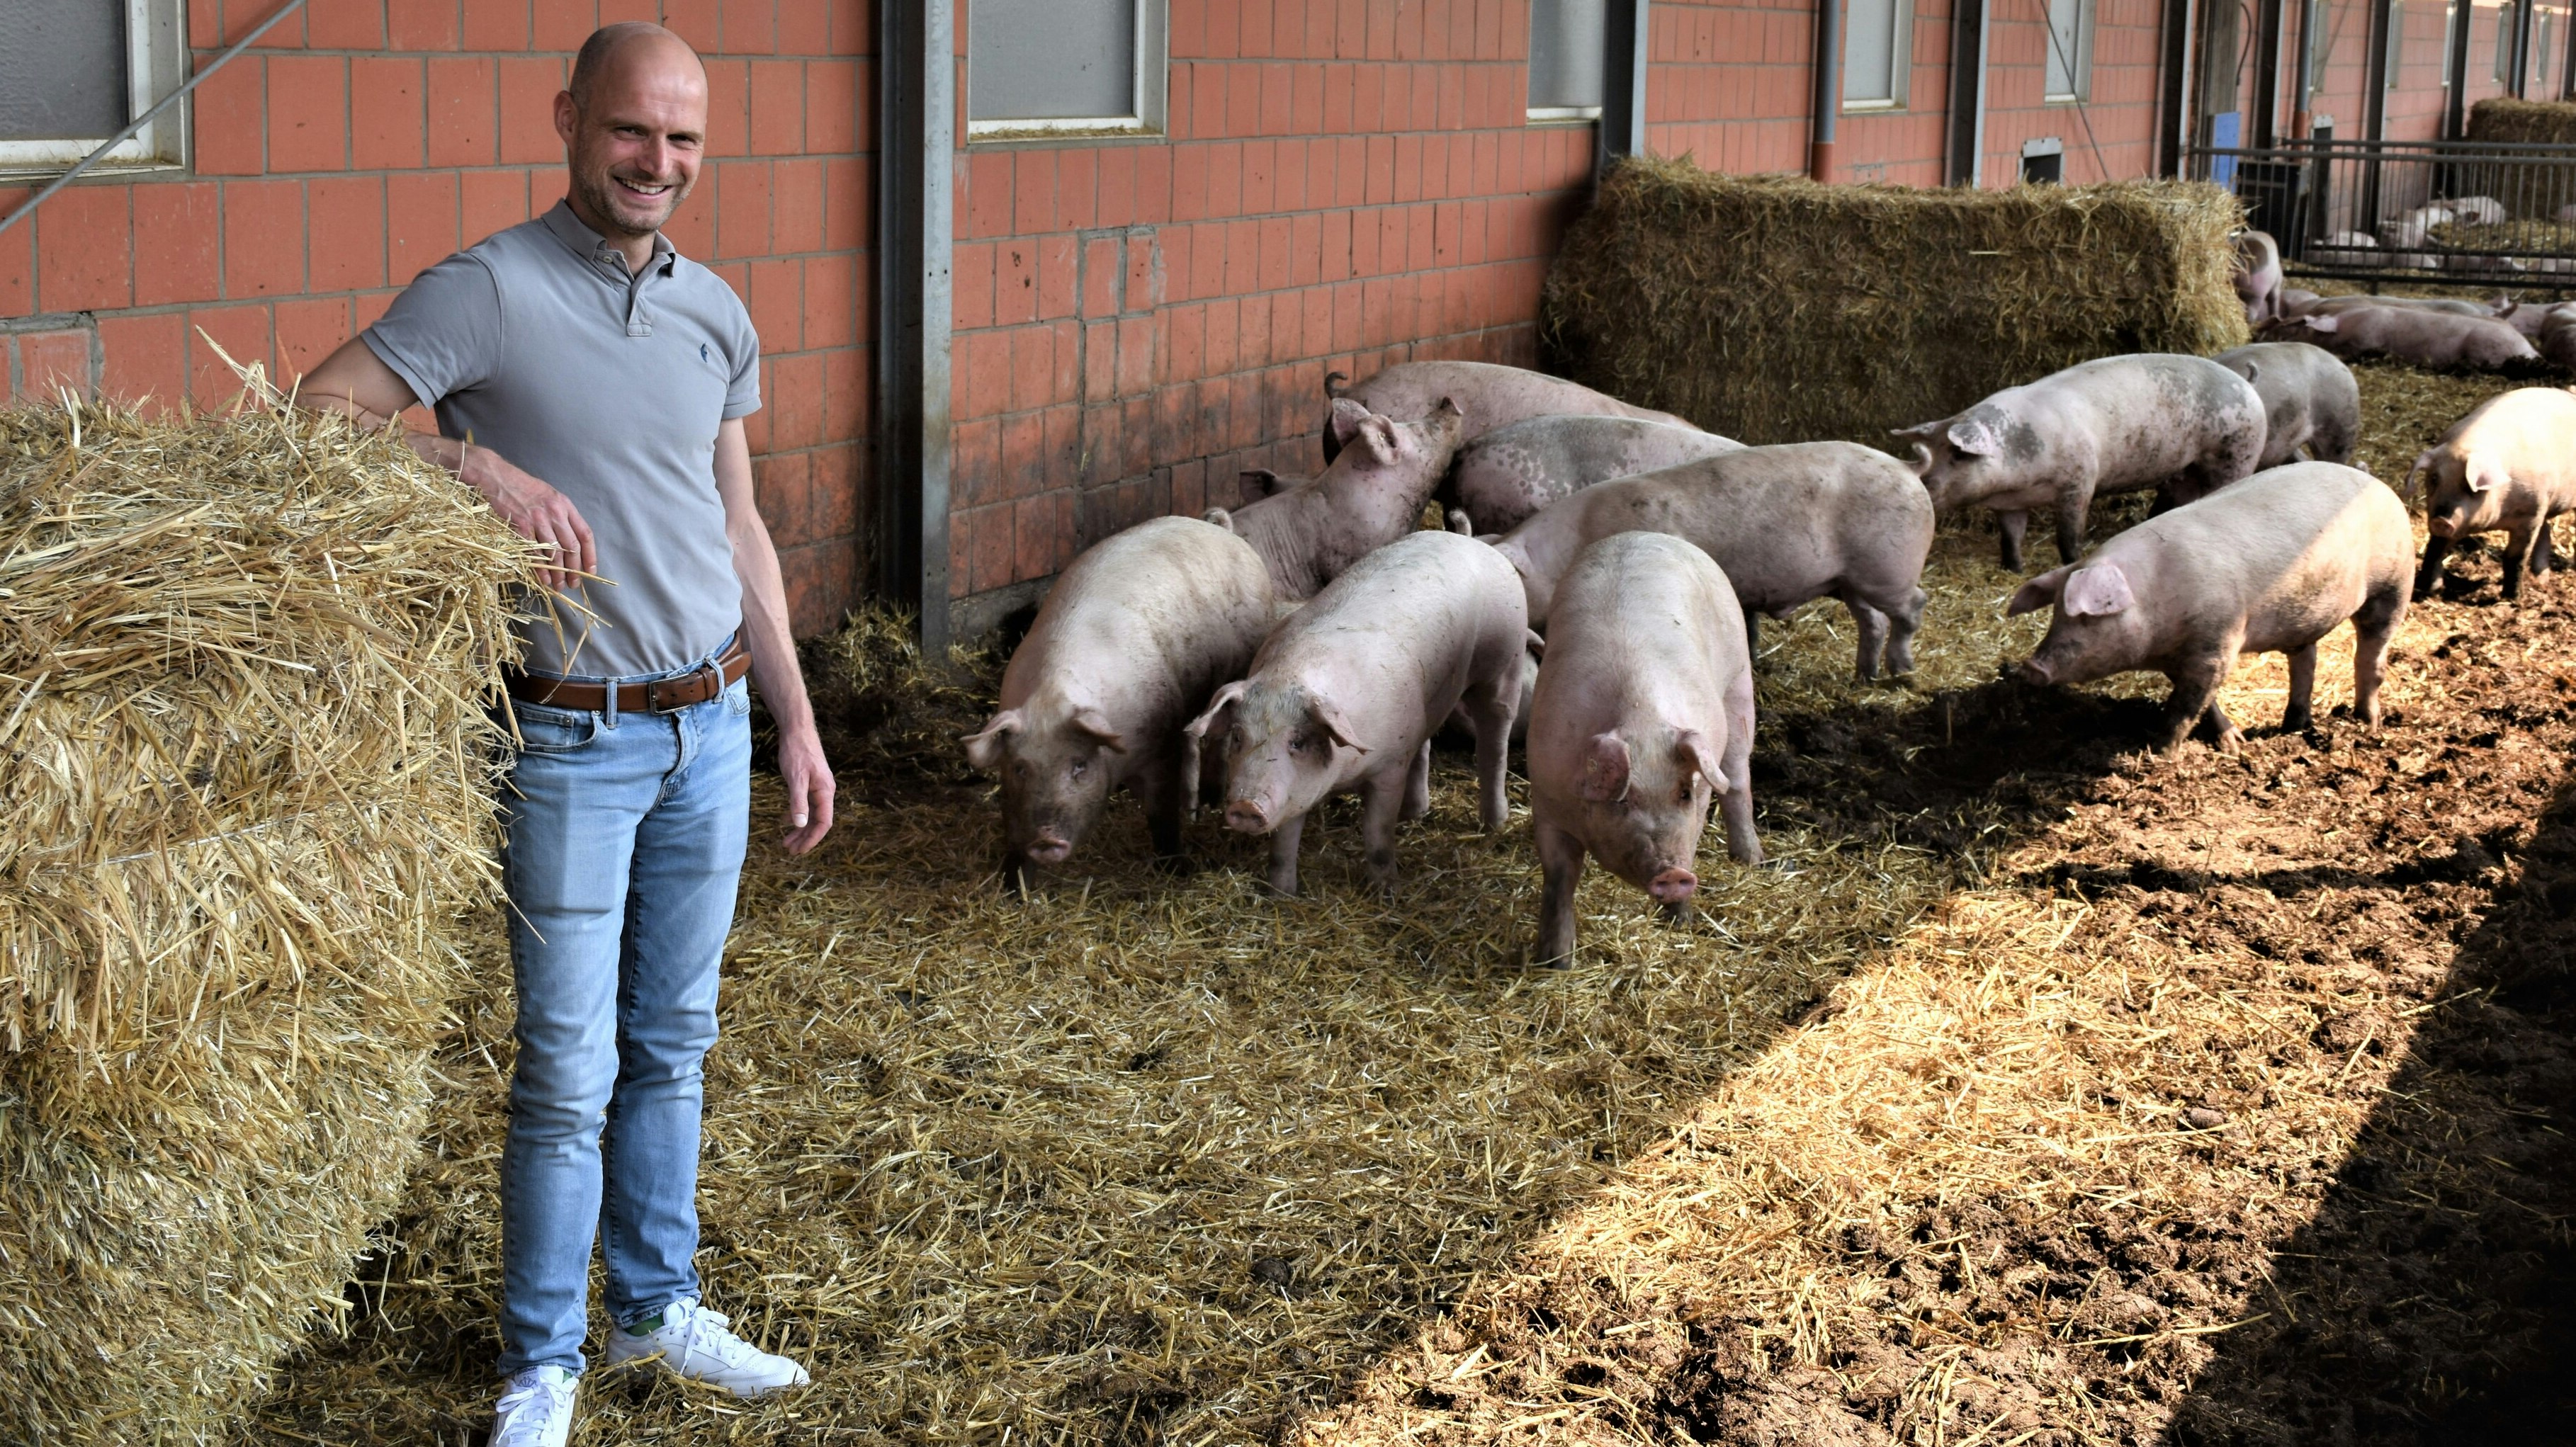 Mäster Sebastian Lüsse bietet seinen Schweinen viel Platz und Stroh in den Ställen. Foto: Kühn